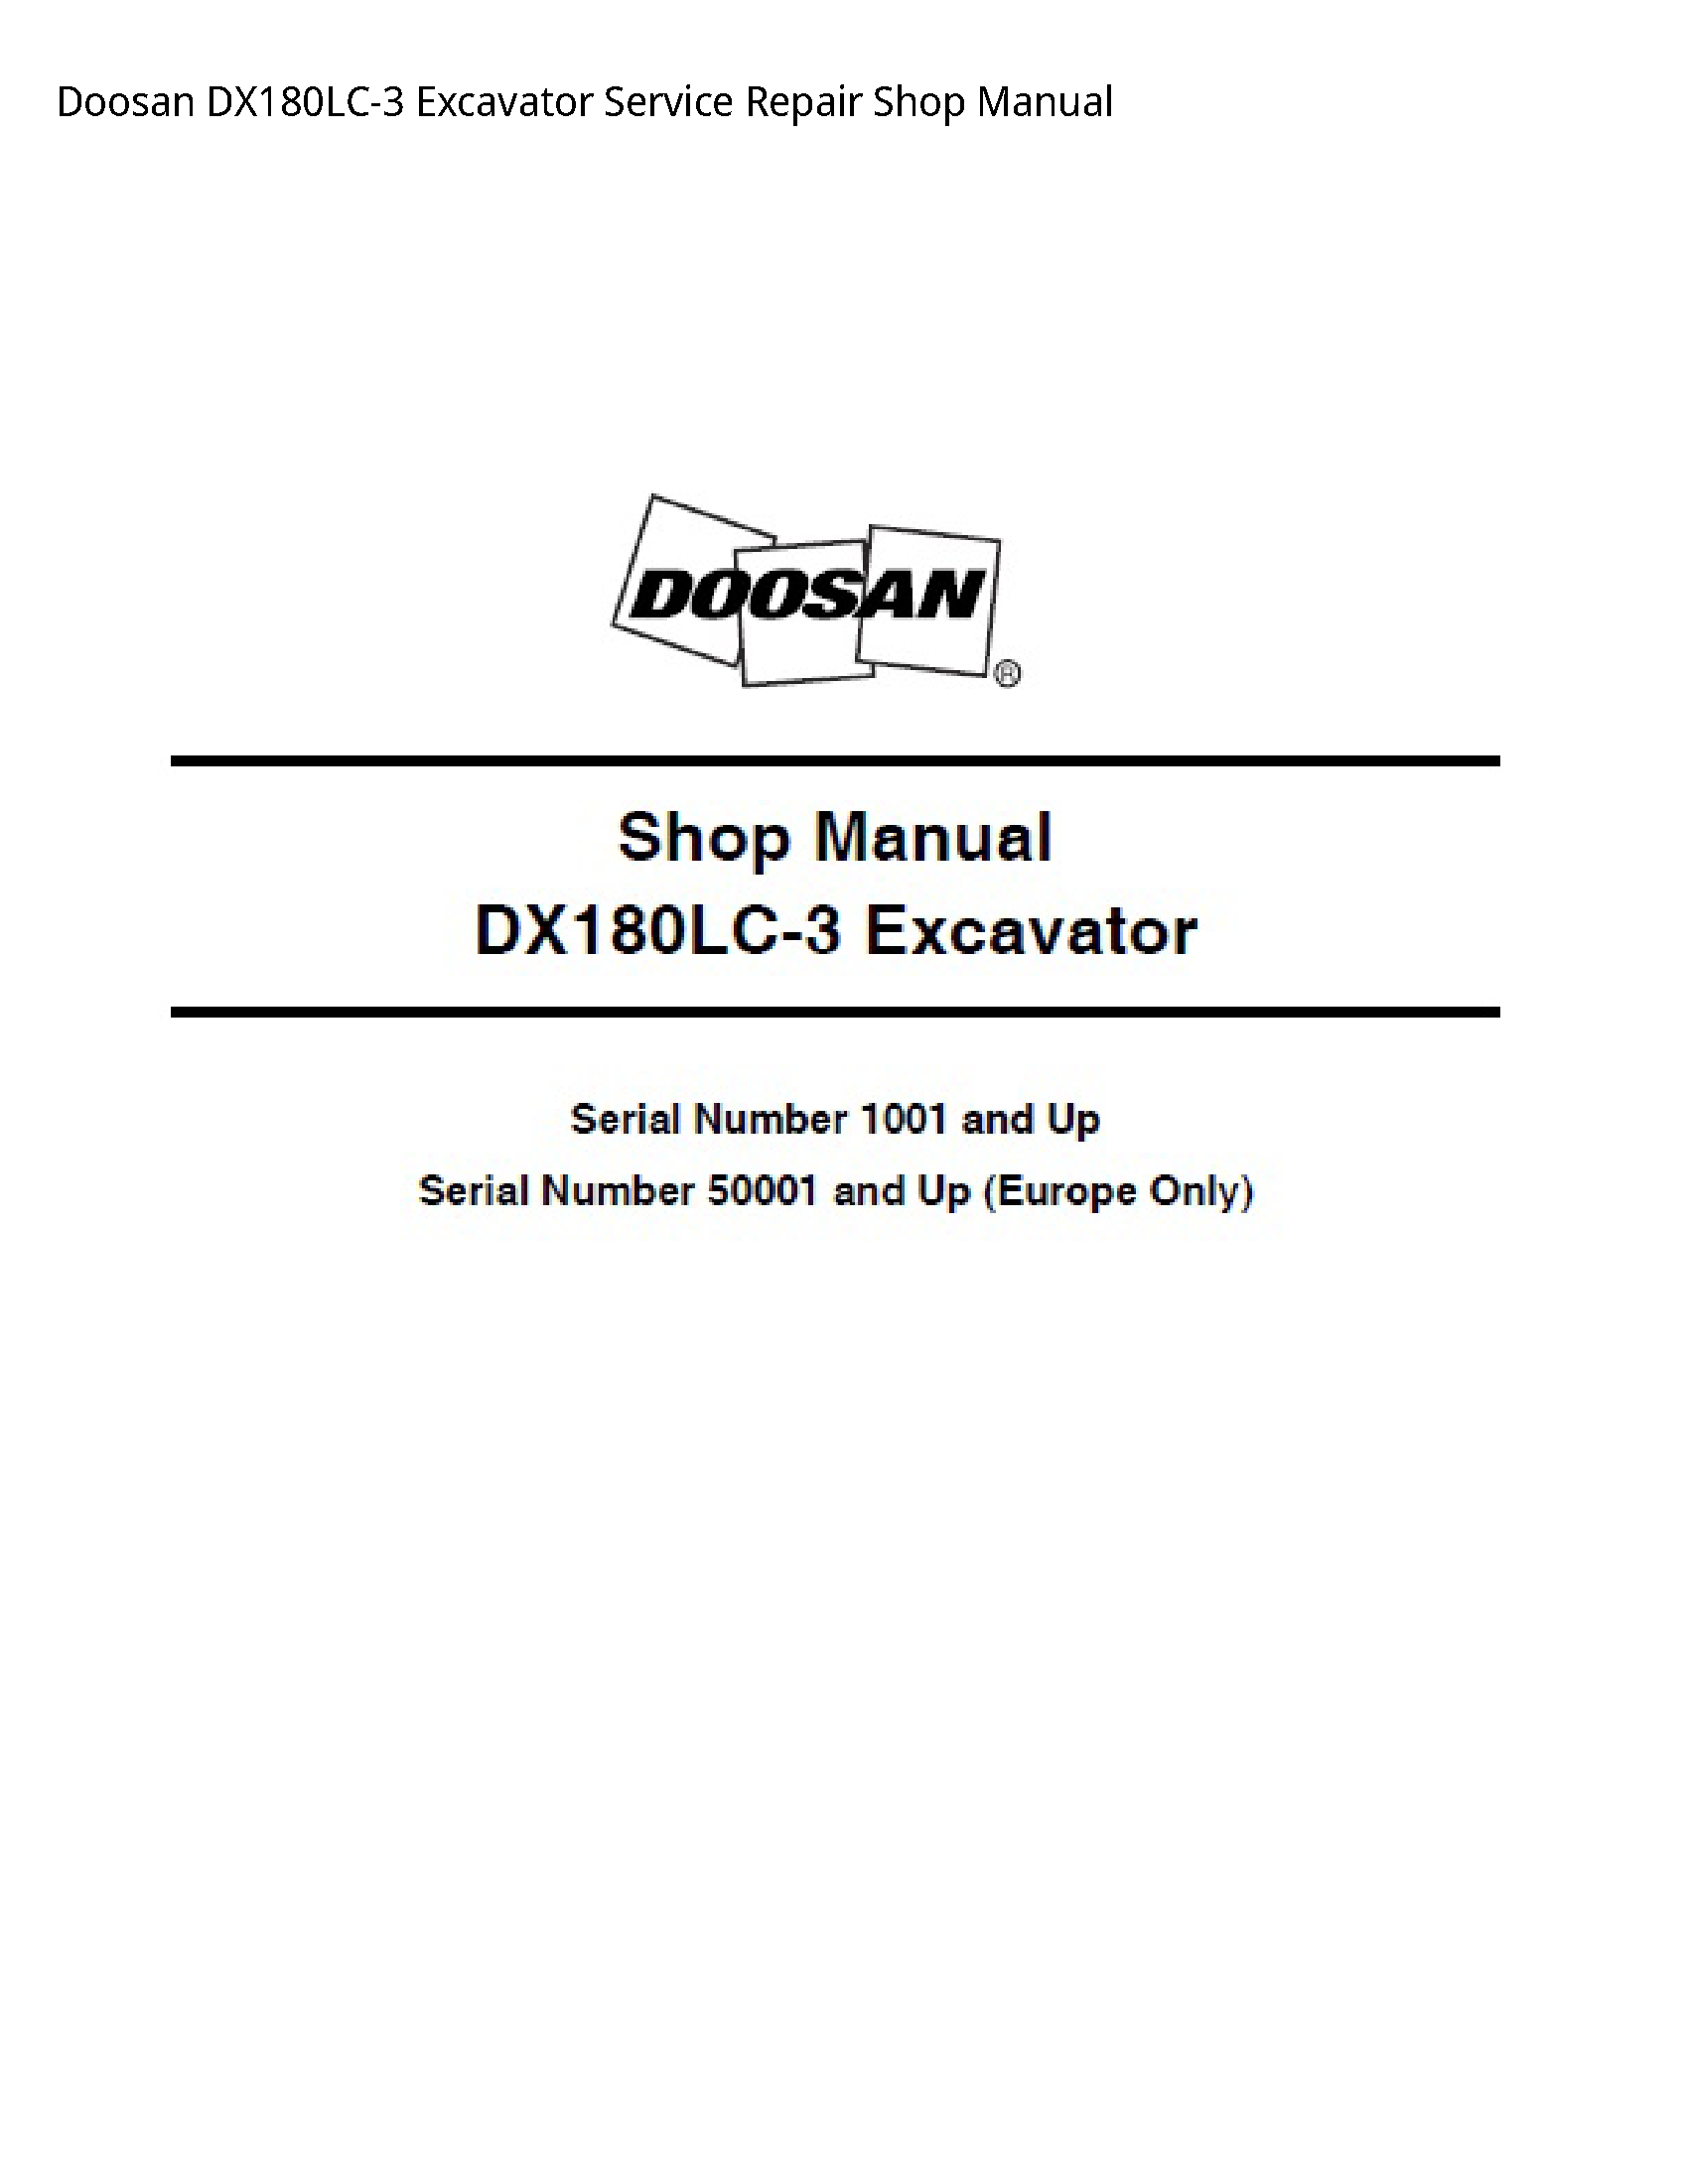 Doosan DX180LC-3 Excavator manual